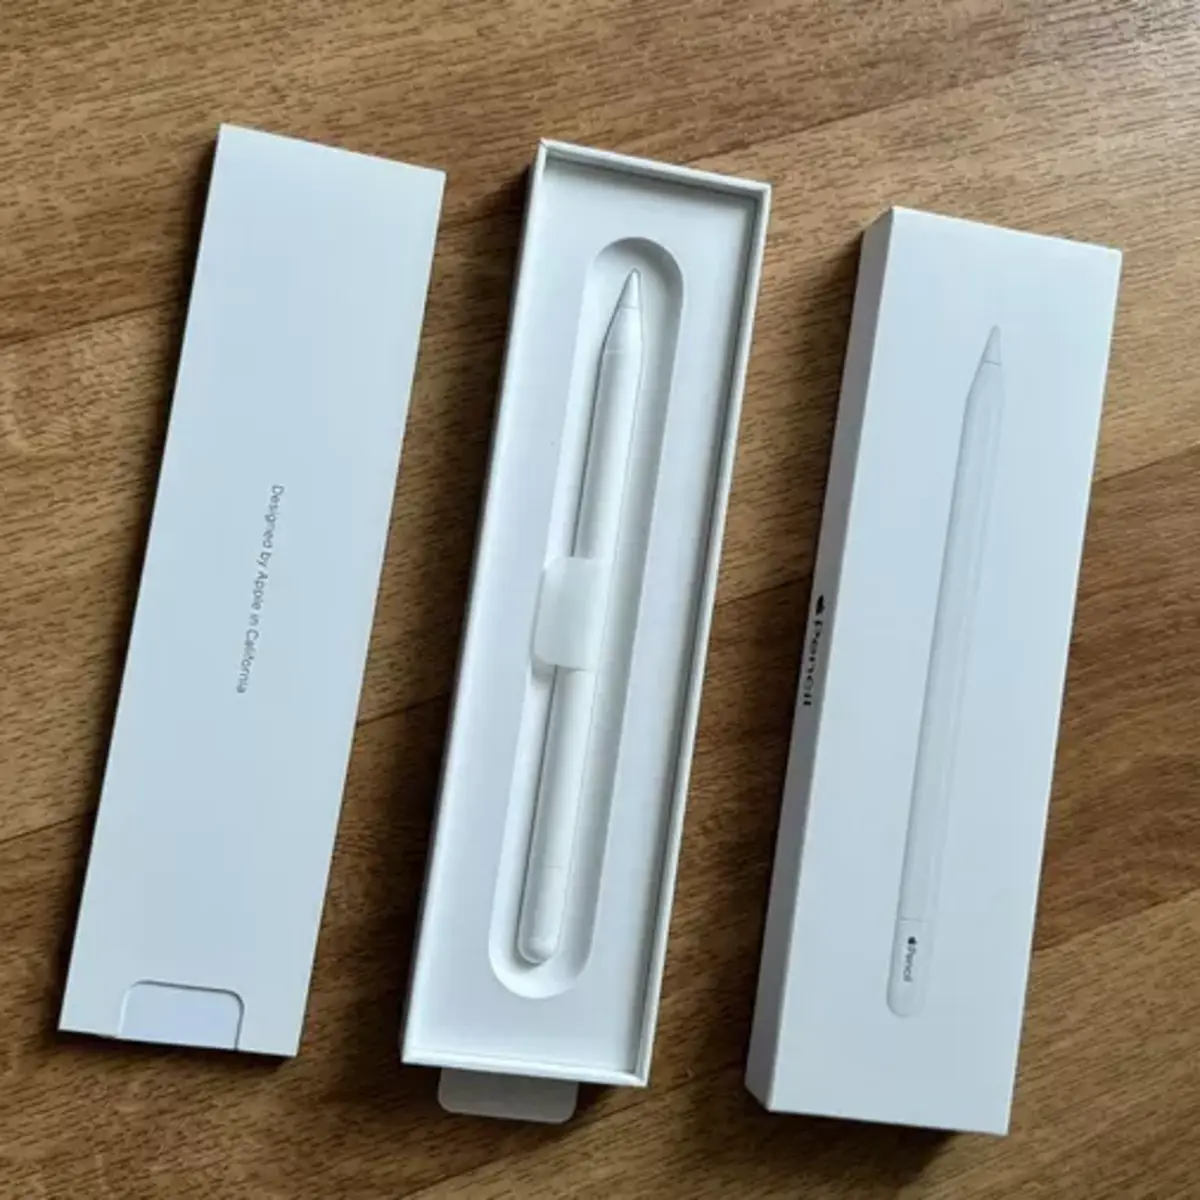 Apple présente le nouvel Apple Pencil, un modèle plus abordable